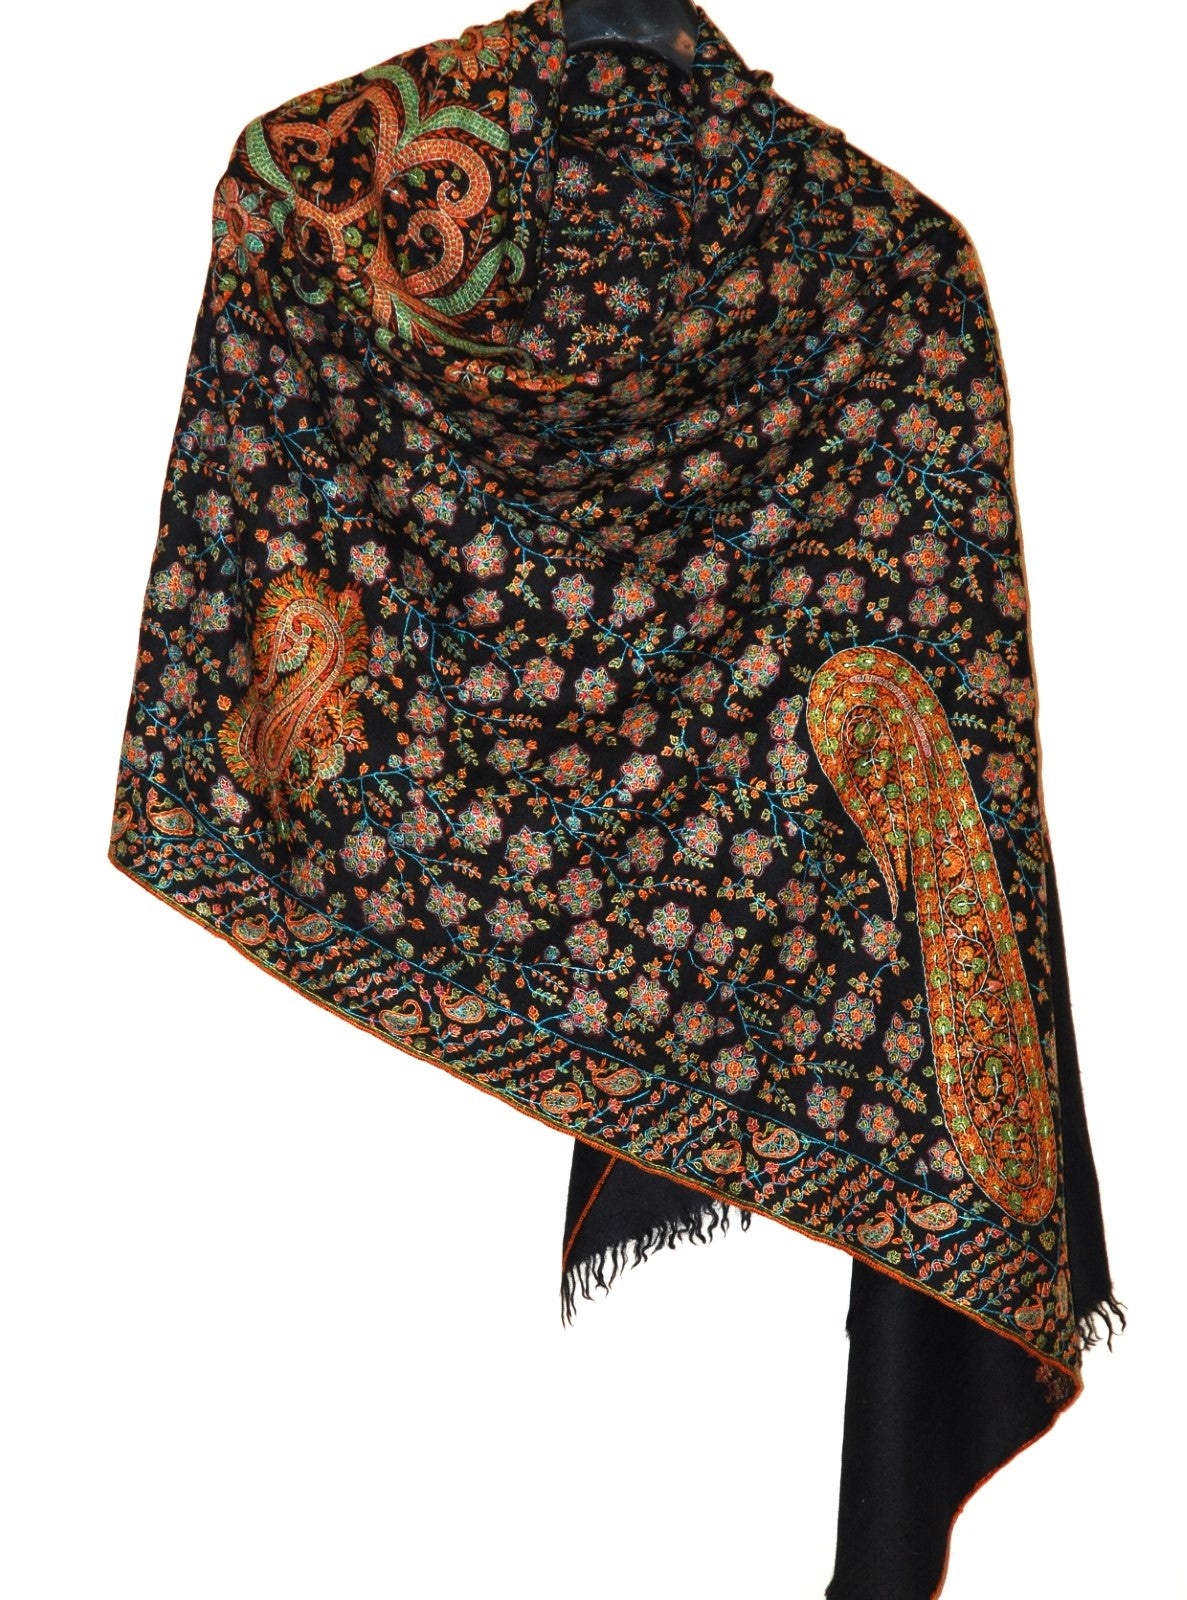 Kashmir Pashmina Cashmere "Sozni" Needlework Jamavar Shawl Black, Multicolor Embroidery #PJM-005